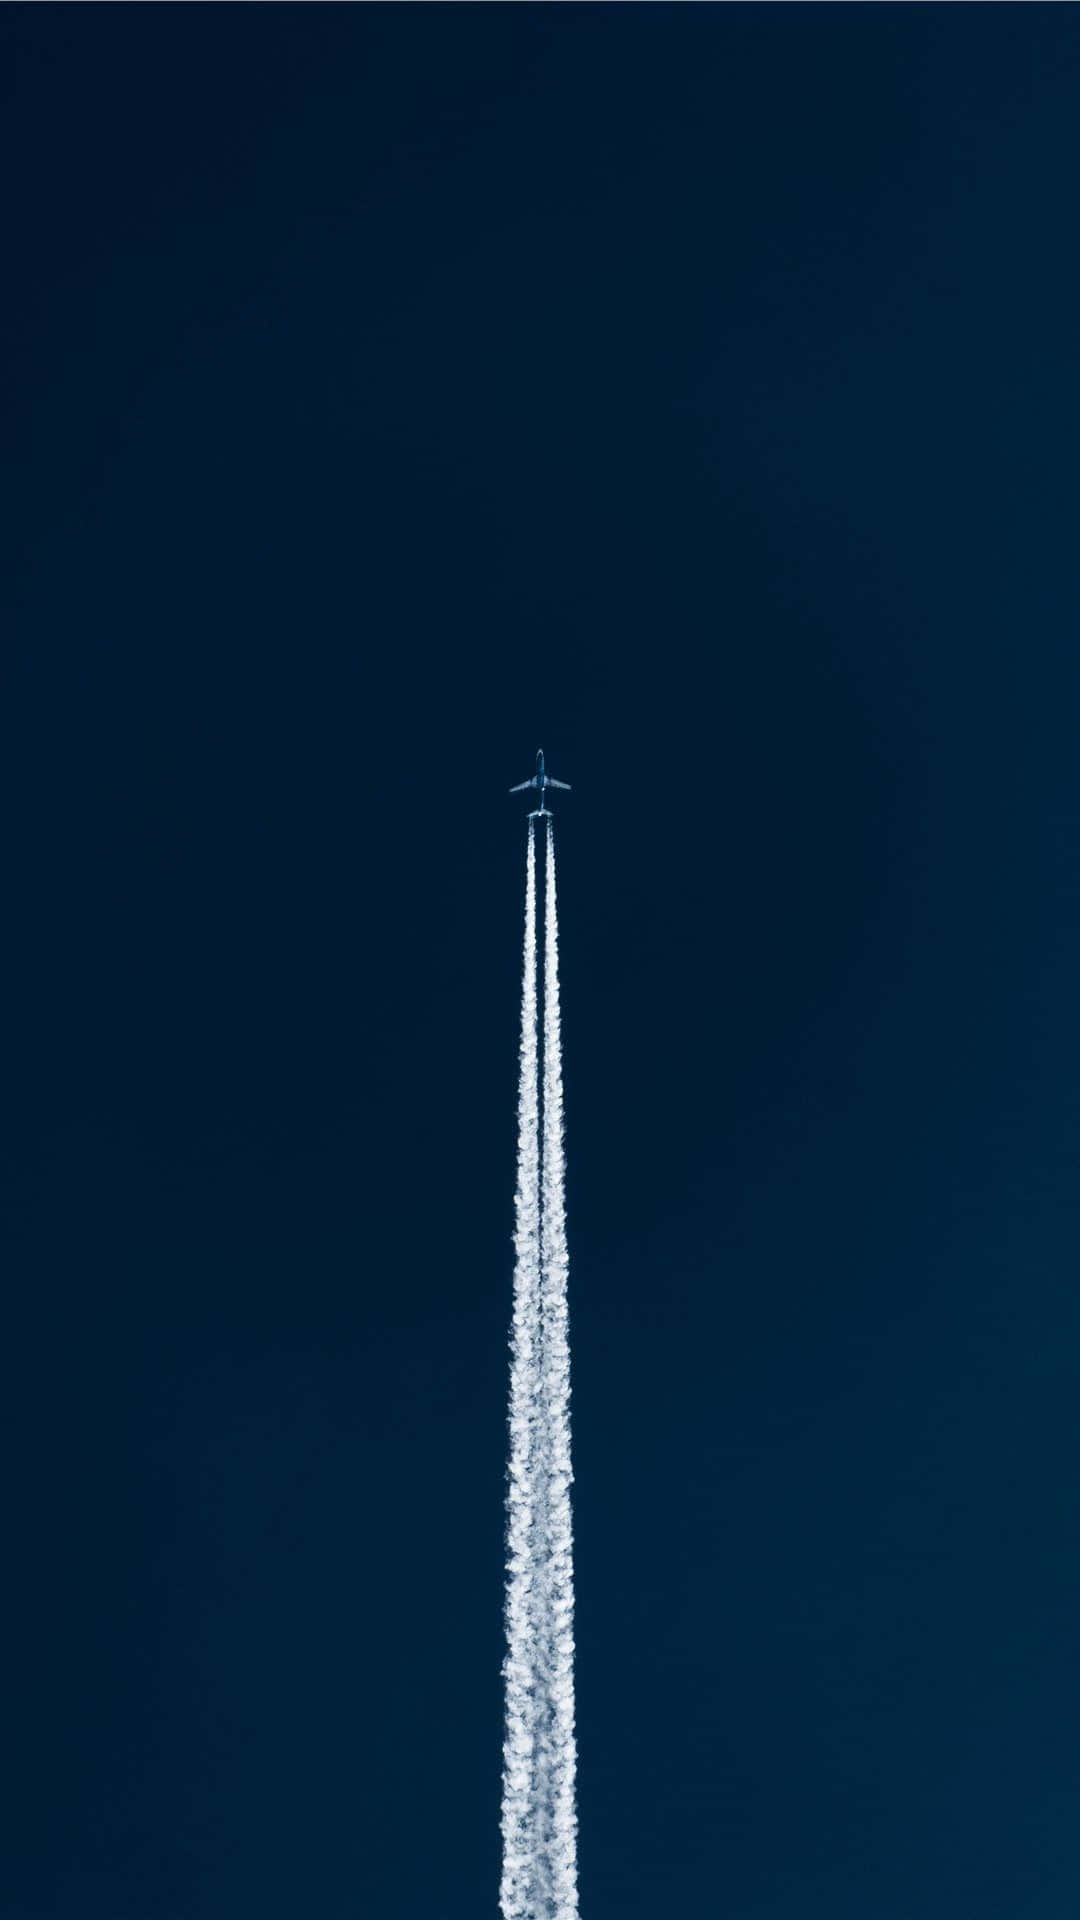 Jet Contrail Against Blue Sky Wallpaper